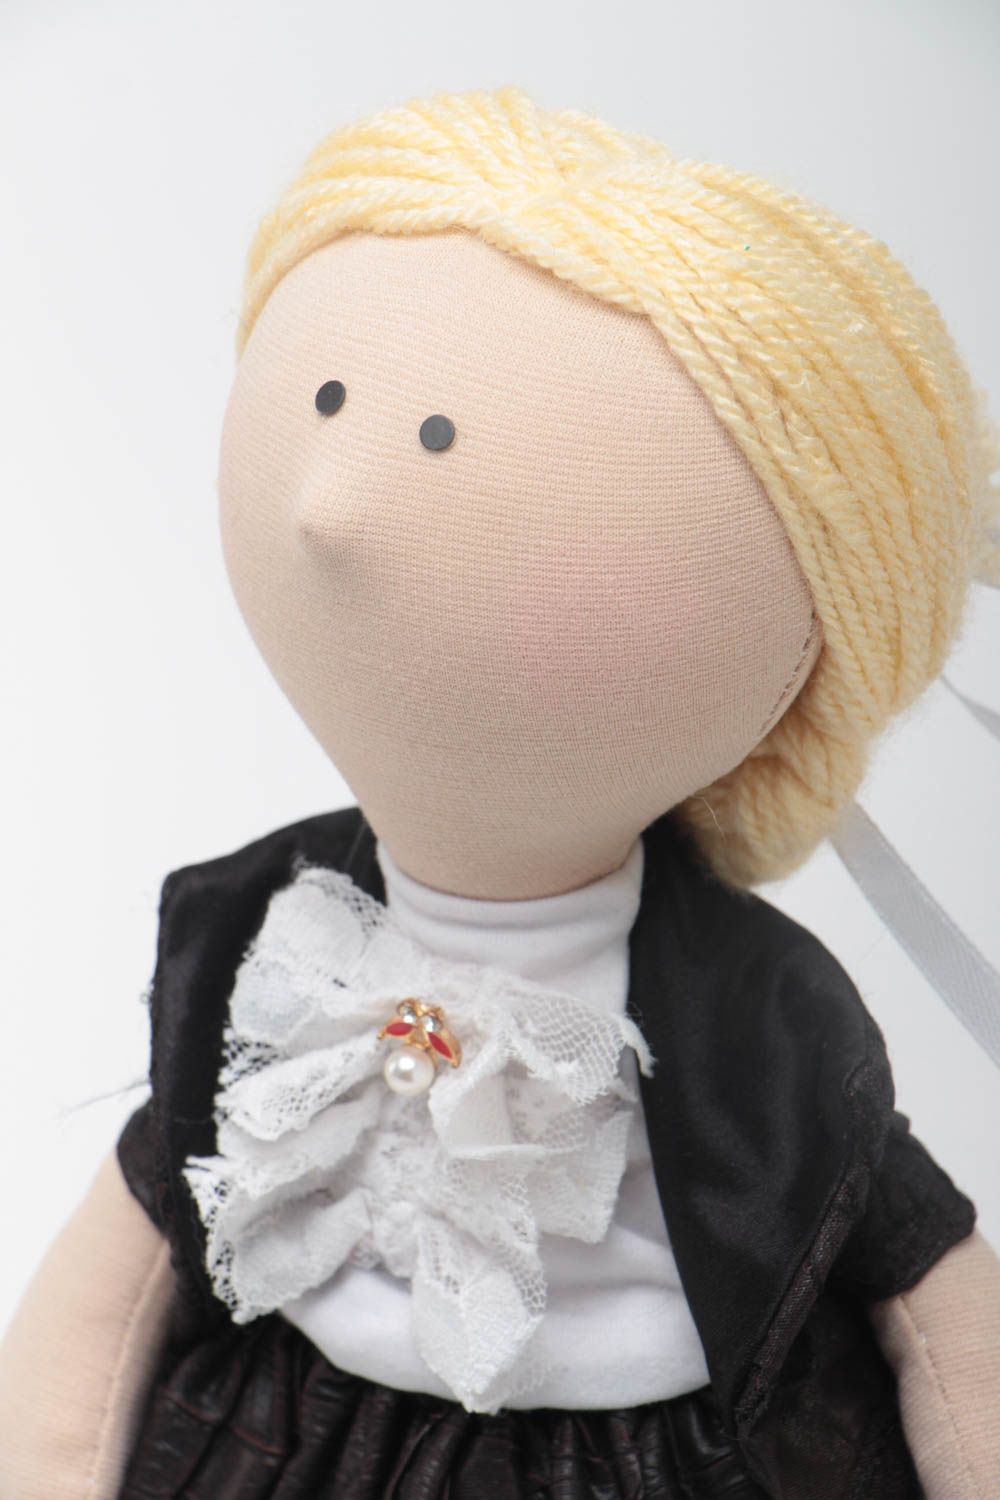 Авторская кукла из ткани с белыми волосами красивая небольшая ручной работы фото 3